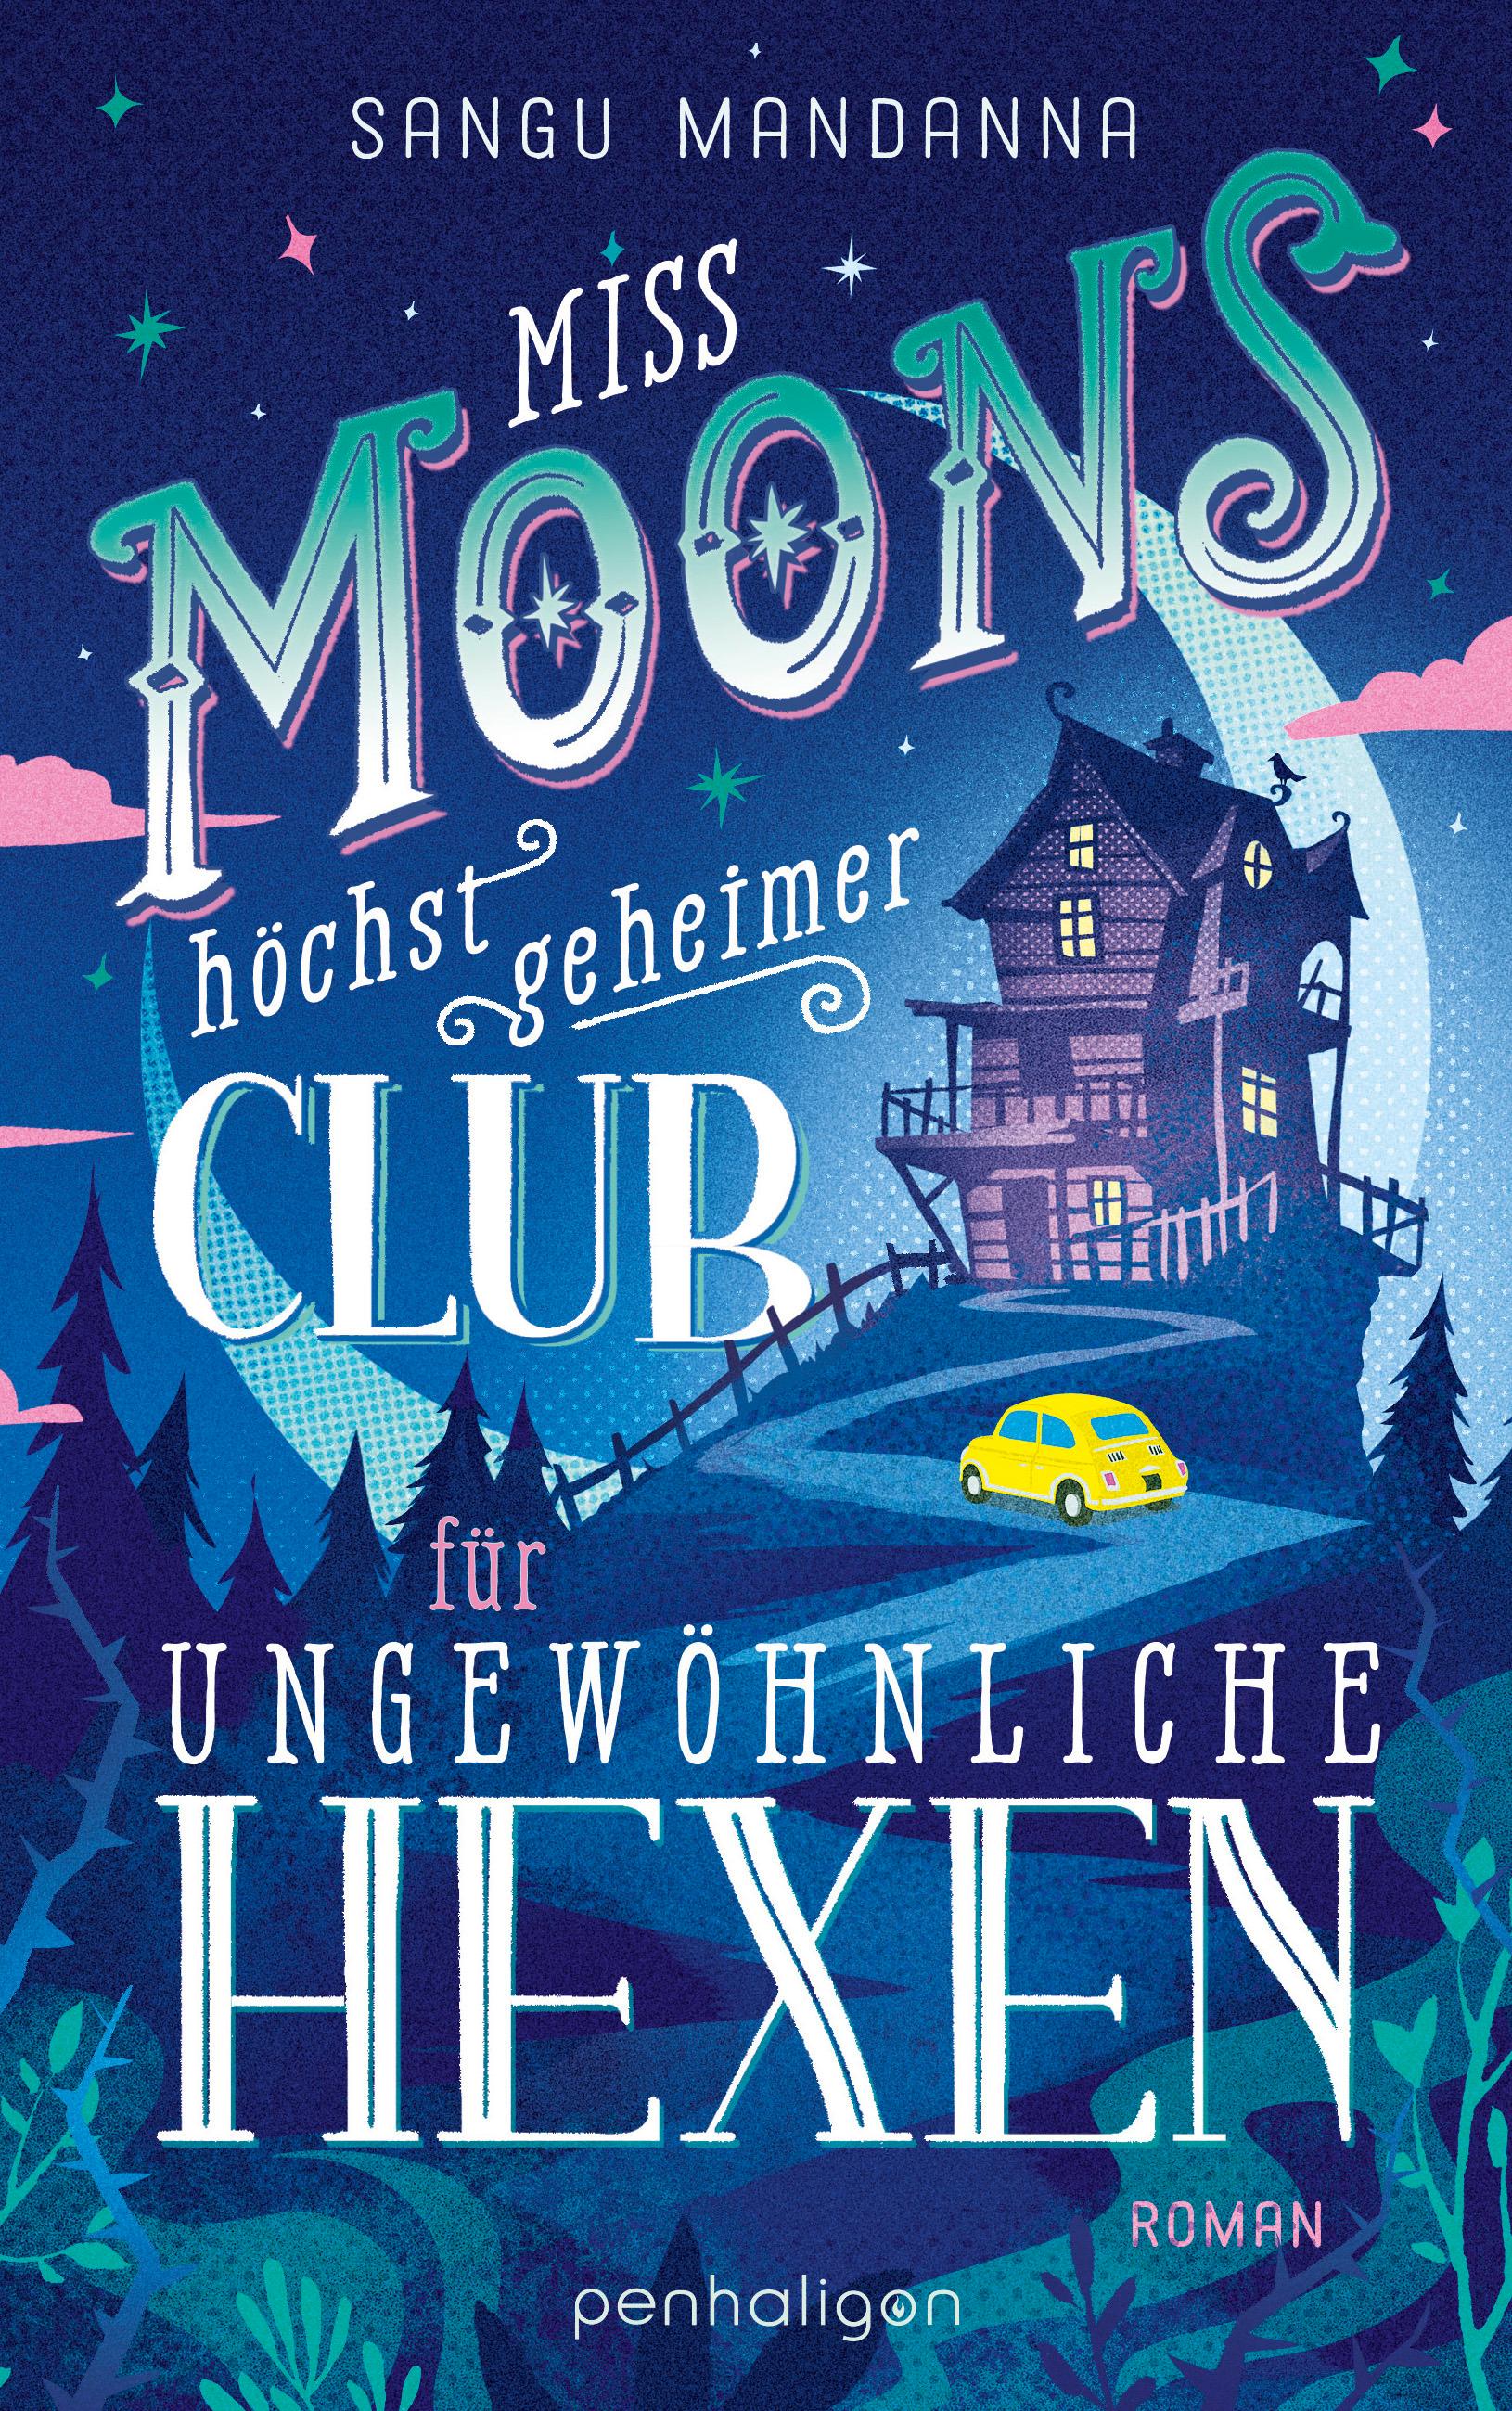 Miss Moons höchst geheimer Club für ungewöhnliche Hexen